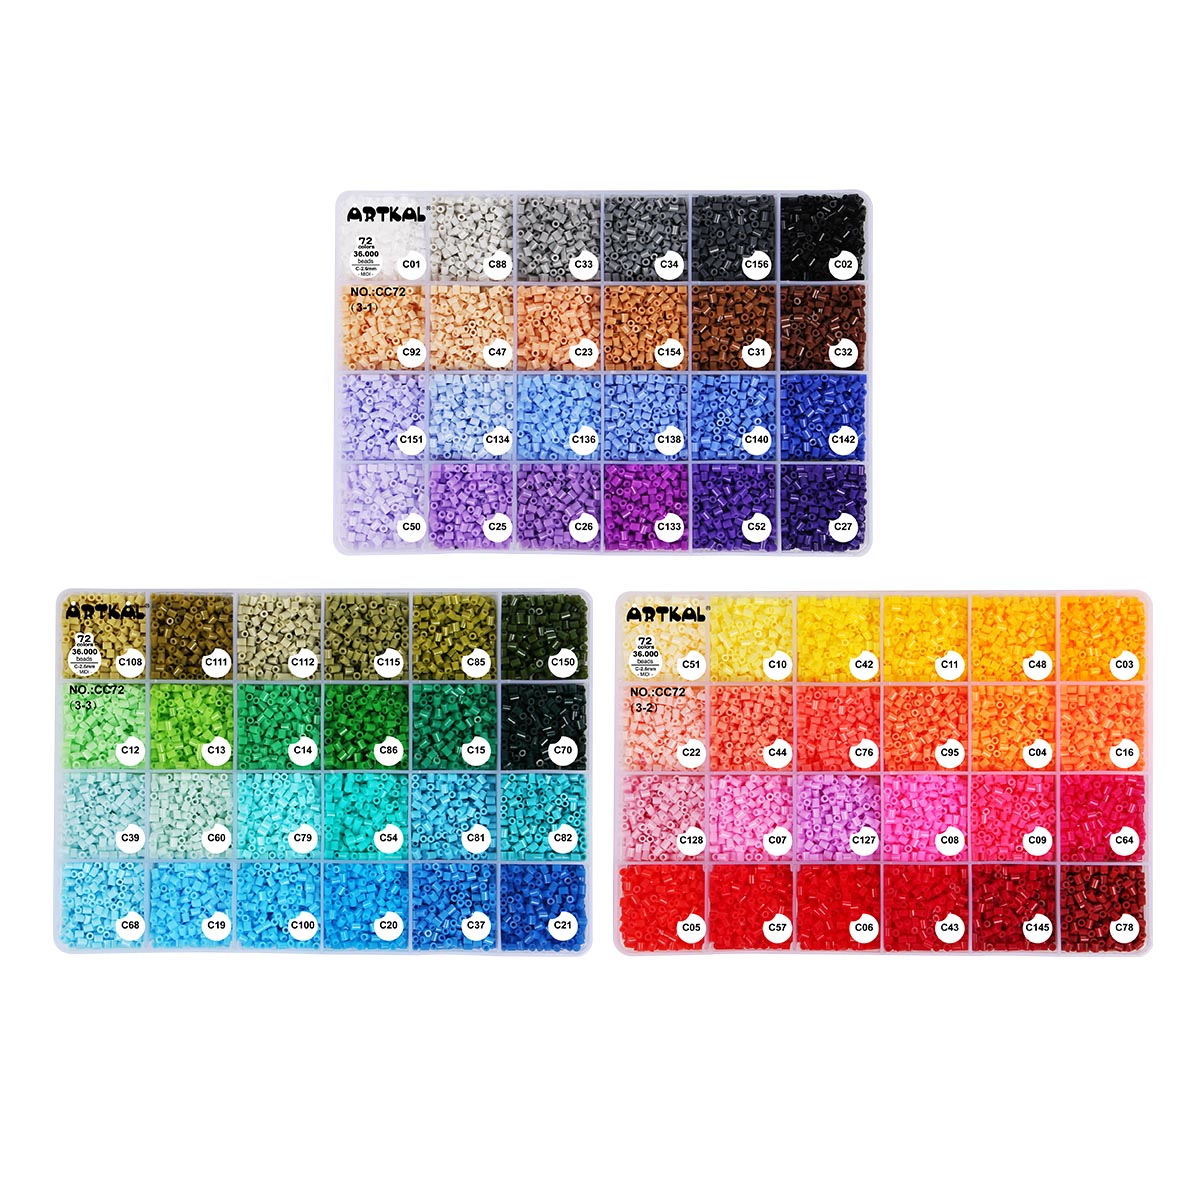 72 colors box set C-2.6mm mini Artkal beads CC72